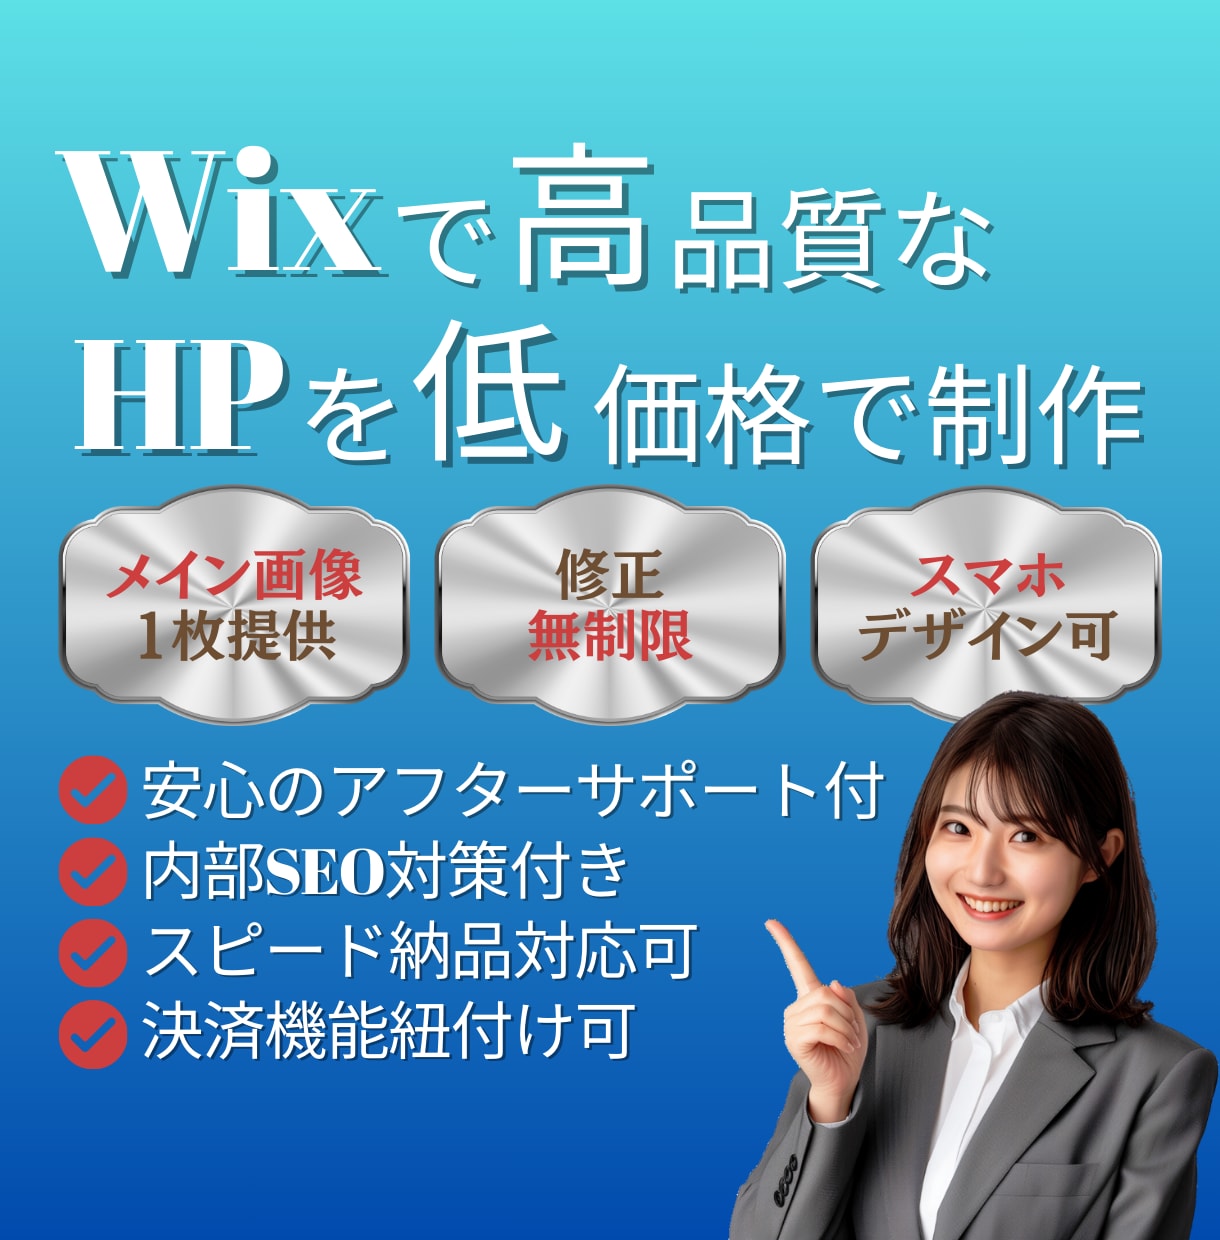 高品質なWiXホームページを低コストで制作します 【HP導入やリニューアルに】おしゃれ・シンプル・スマホ対応 イメージ1